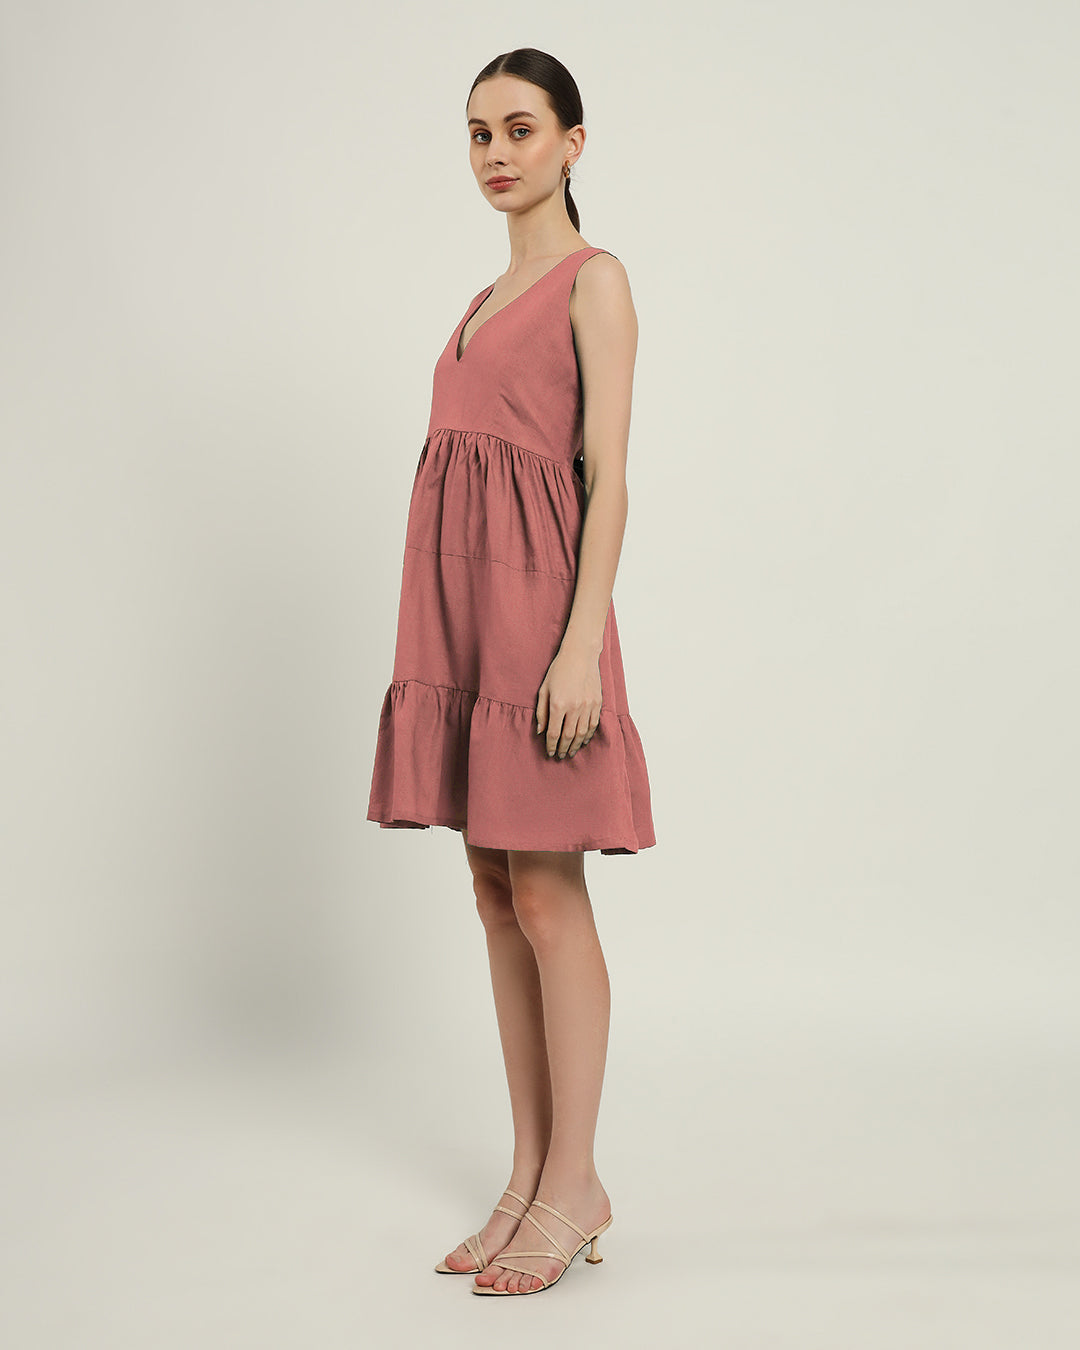 The Minsk Ivory Pink Cotton Dress